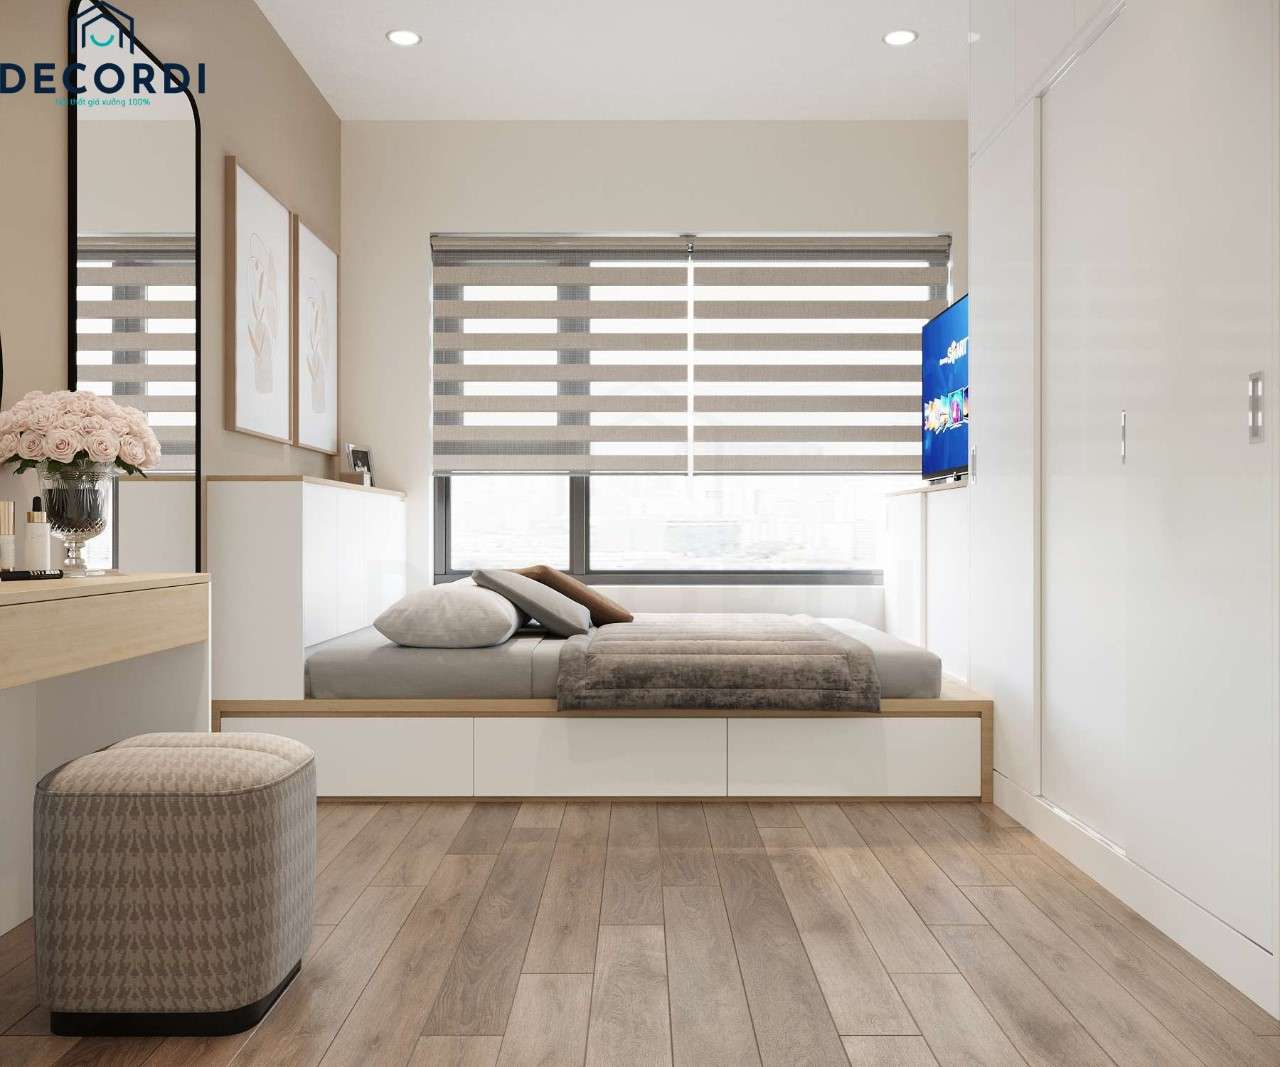 Thiết kế nội thất phòng ngủ chung cư nhỏ sử dụng gam màu trắng hiện đại